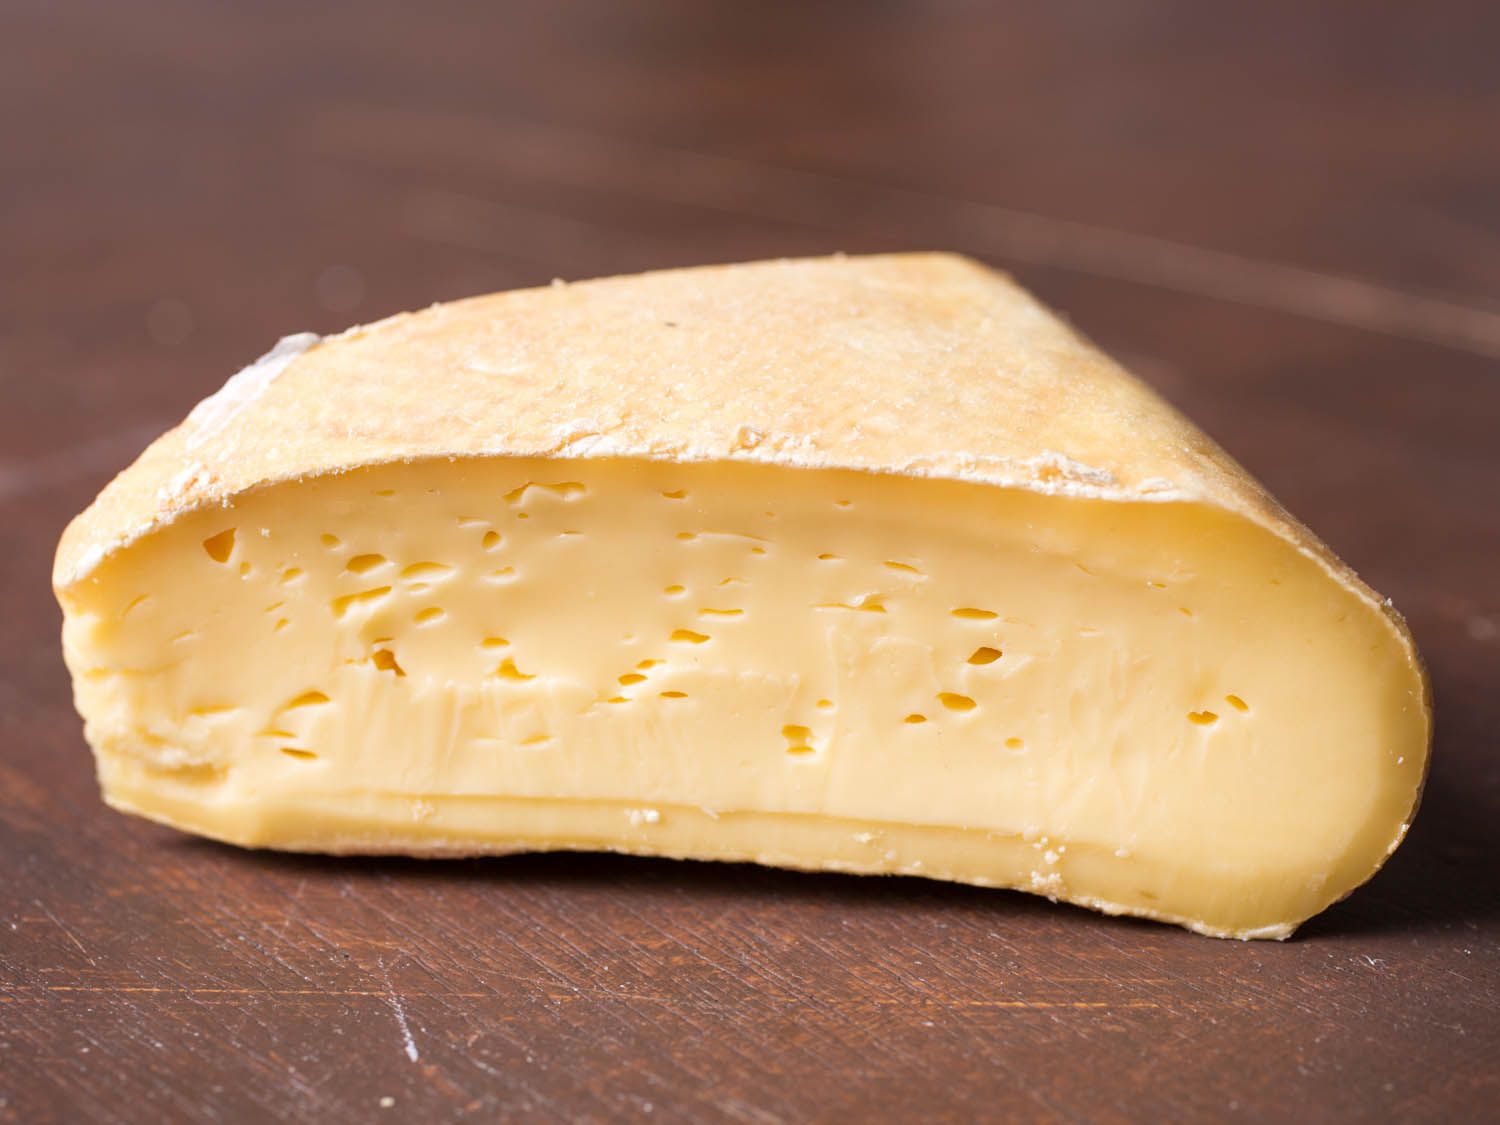 20141021 - cheese101 -南-奶酪-草原溪-格雷森-维姬-沃斯克- 9. - jpg